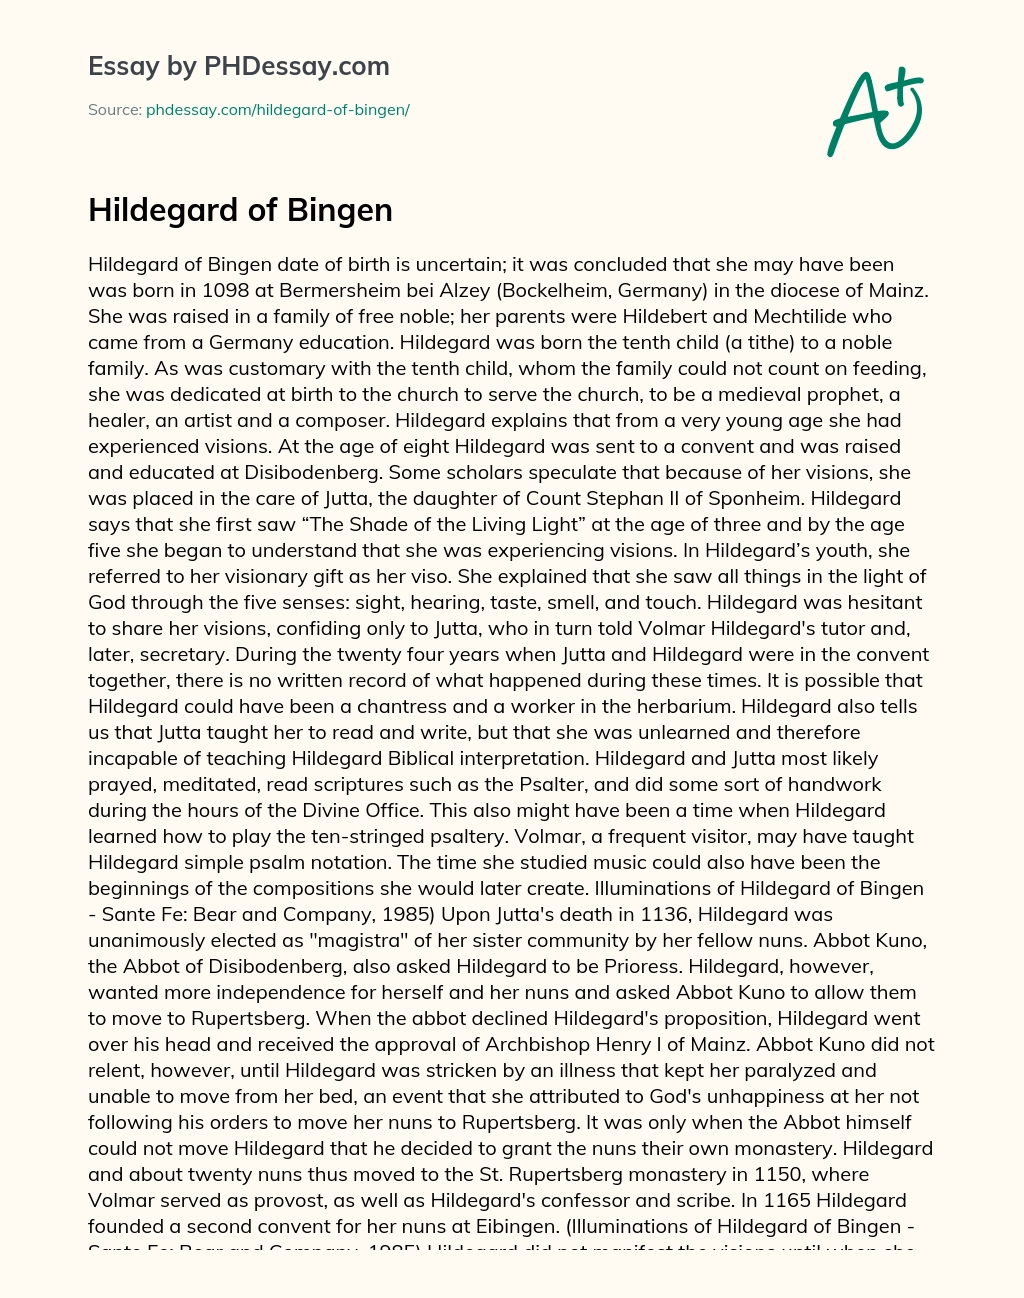 Hildegard of Bingen essay